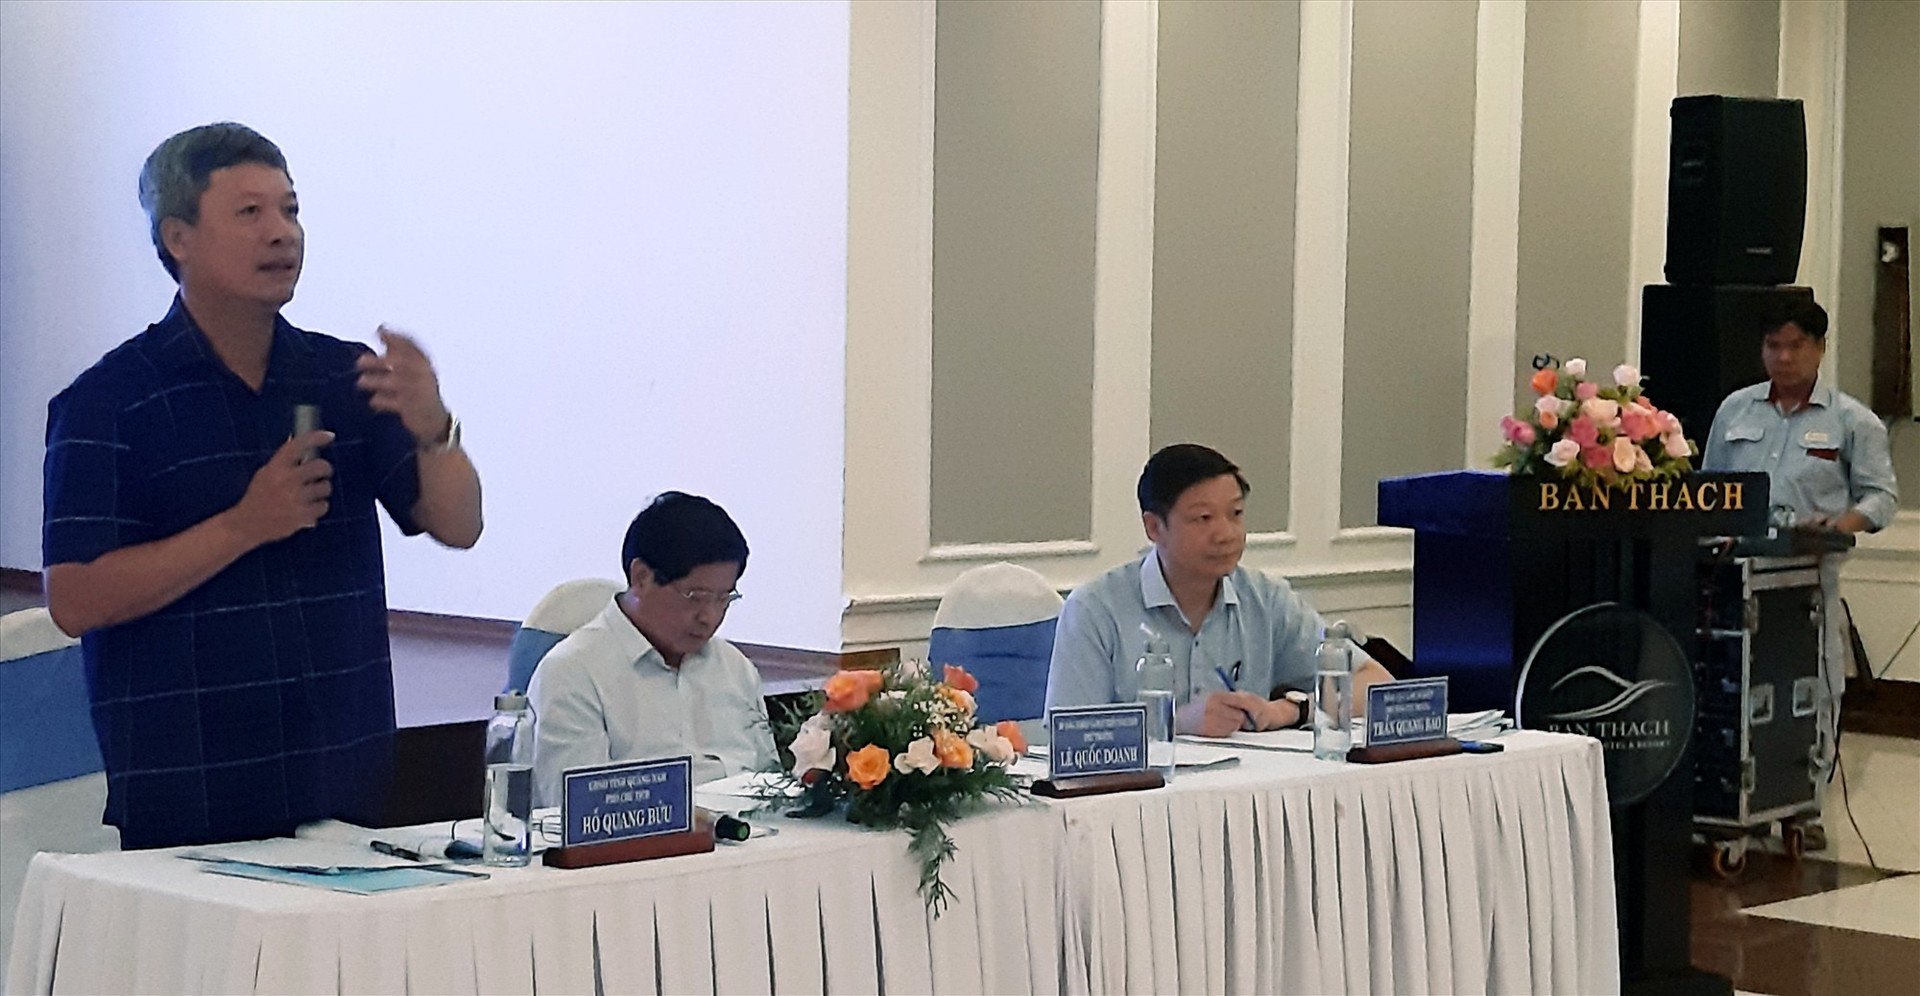 Phó Chủ tịch UBND tỉnh Hồ Quang Bửu gợi mở những vấn đề trọng tâm để các đại biểu trao đổi ý kiến.   Ảnh: S.L